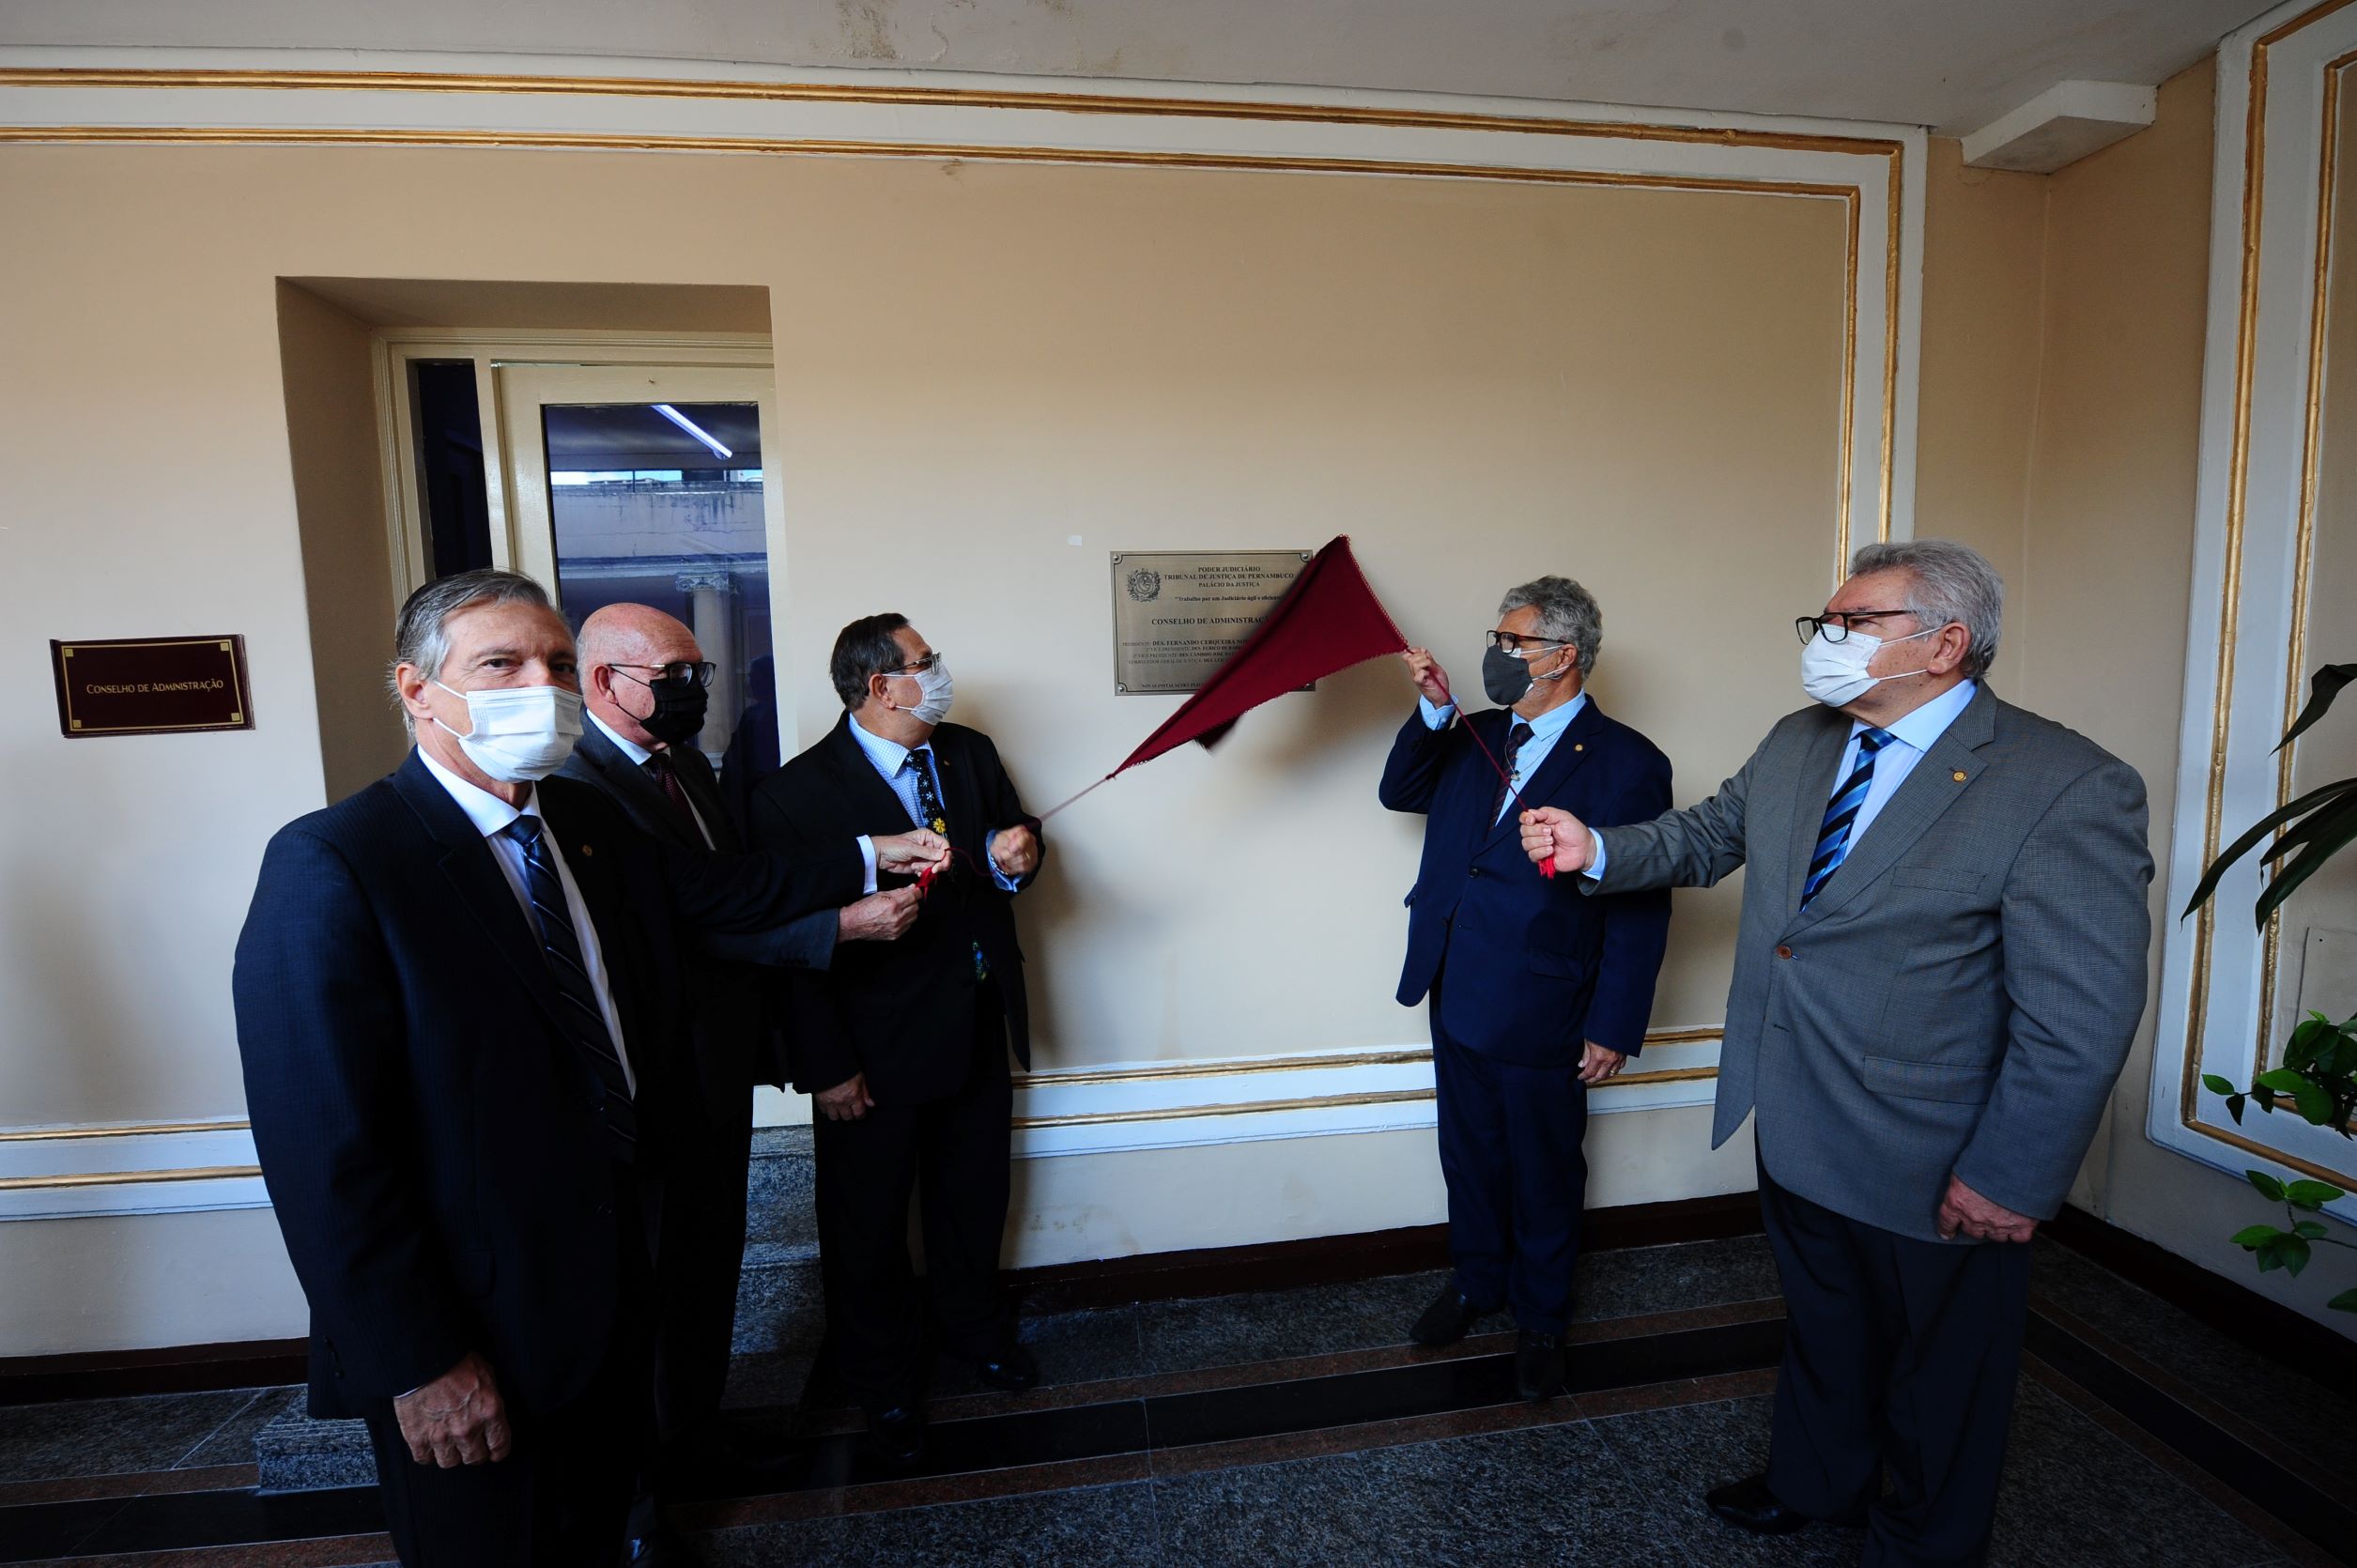 Imagem mostra cinco homens puxando um pano cor de vinho que cobre uma placa de inauguração